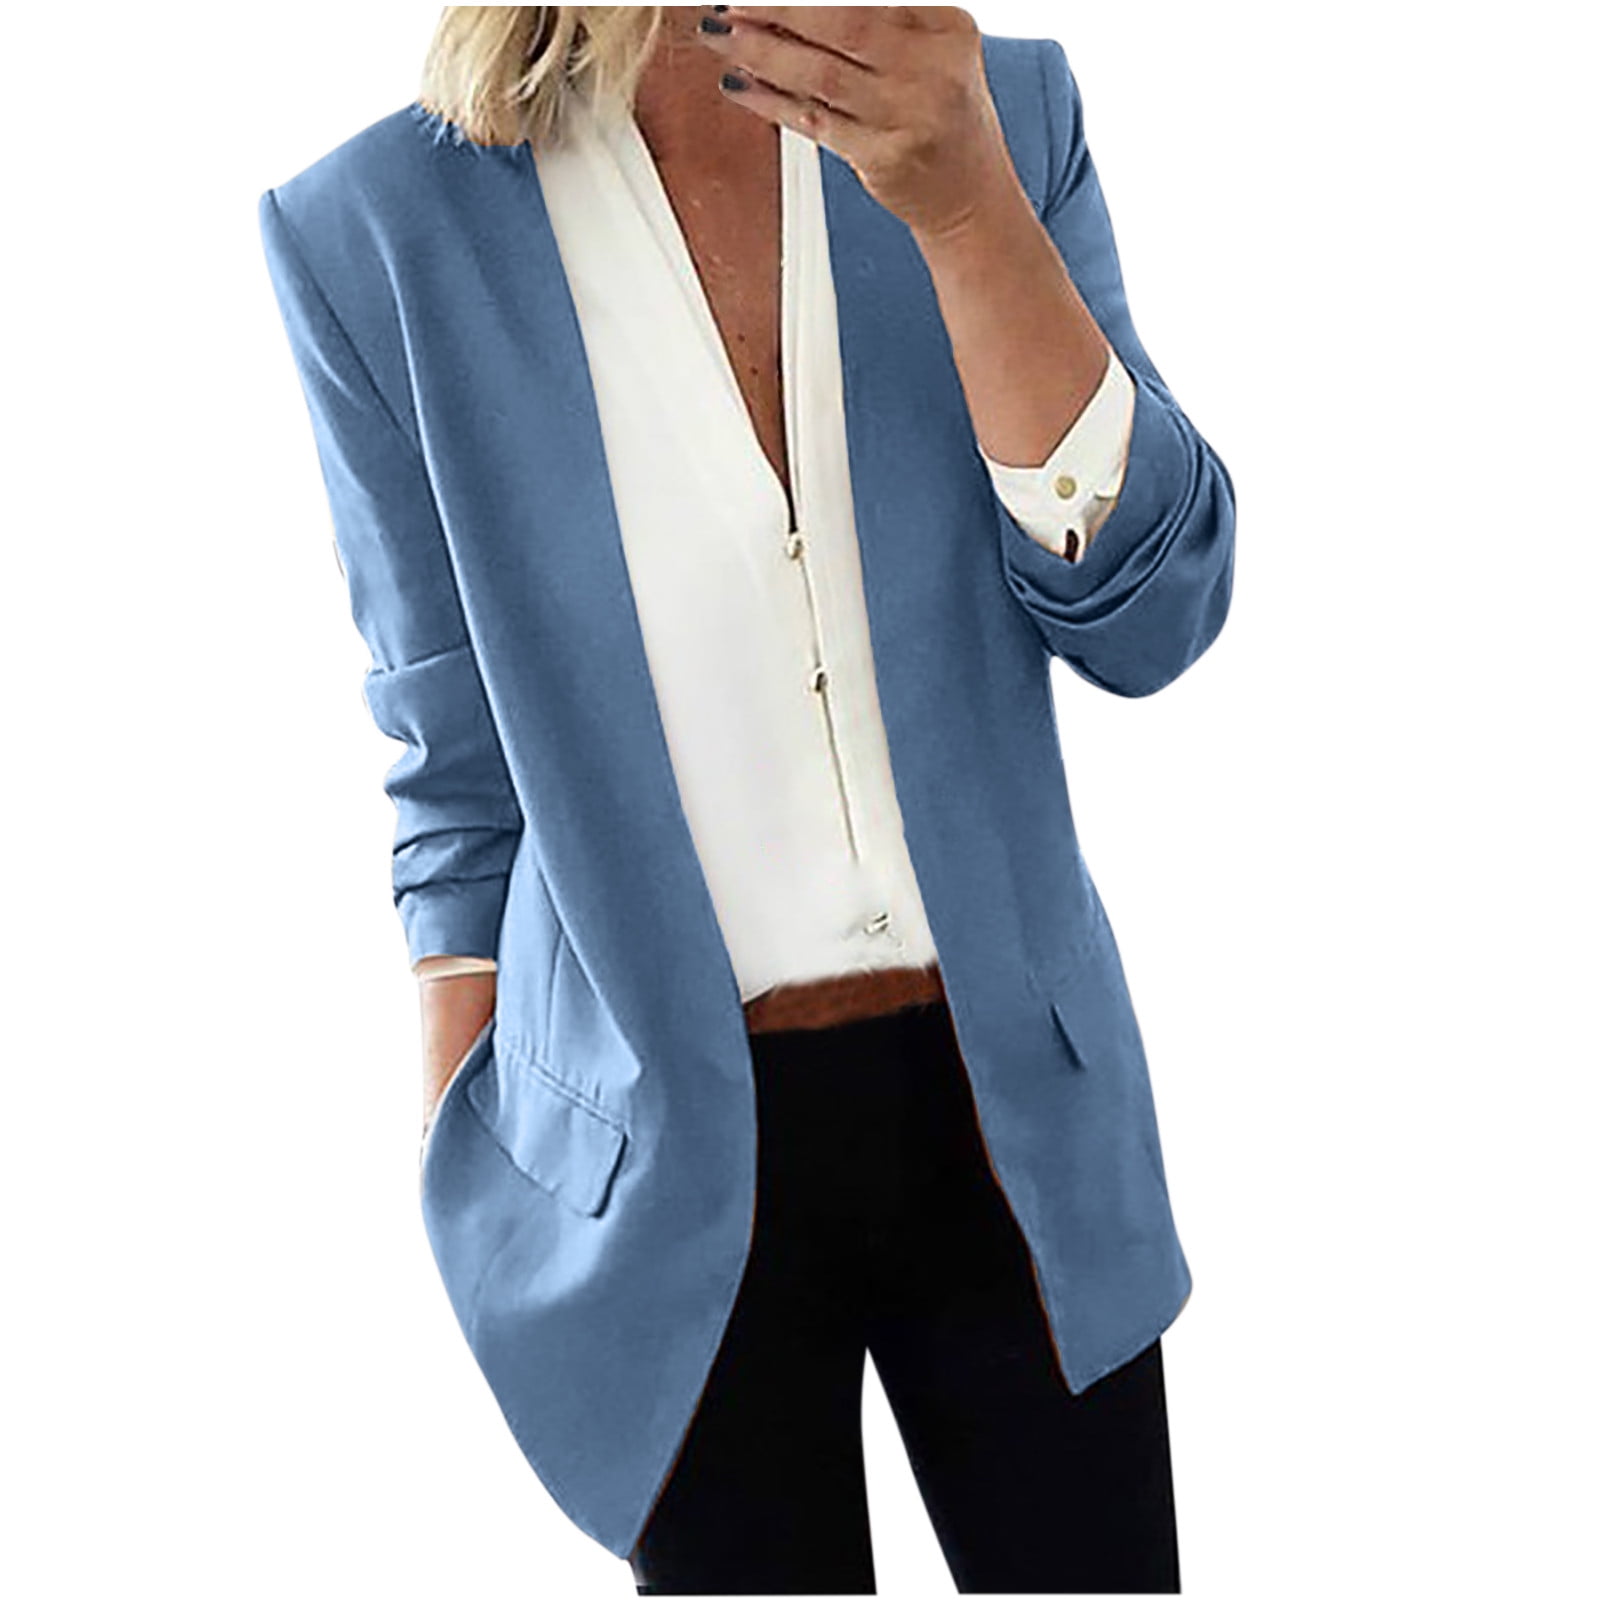 tklpehg Womens Casual Blazer Jacket Long Sleeve Lapel Cape Cloak Long Coat Blazers  Ladies Casual Office Suit Outwear Brown L 